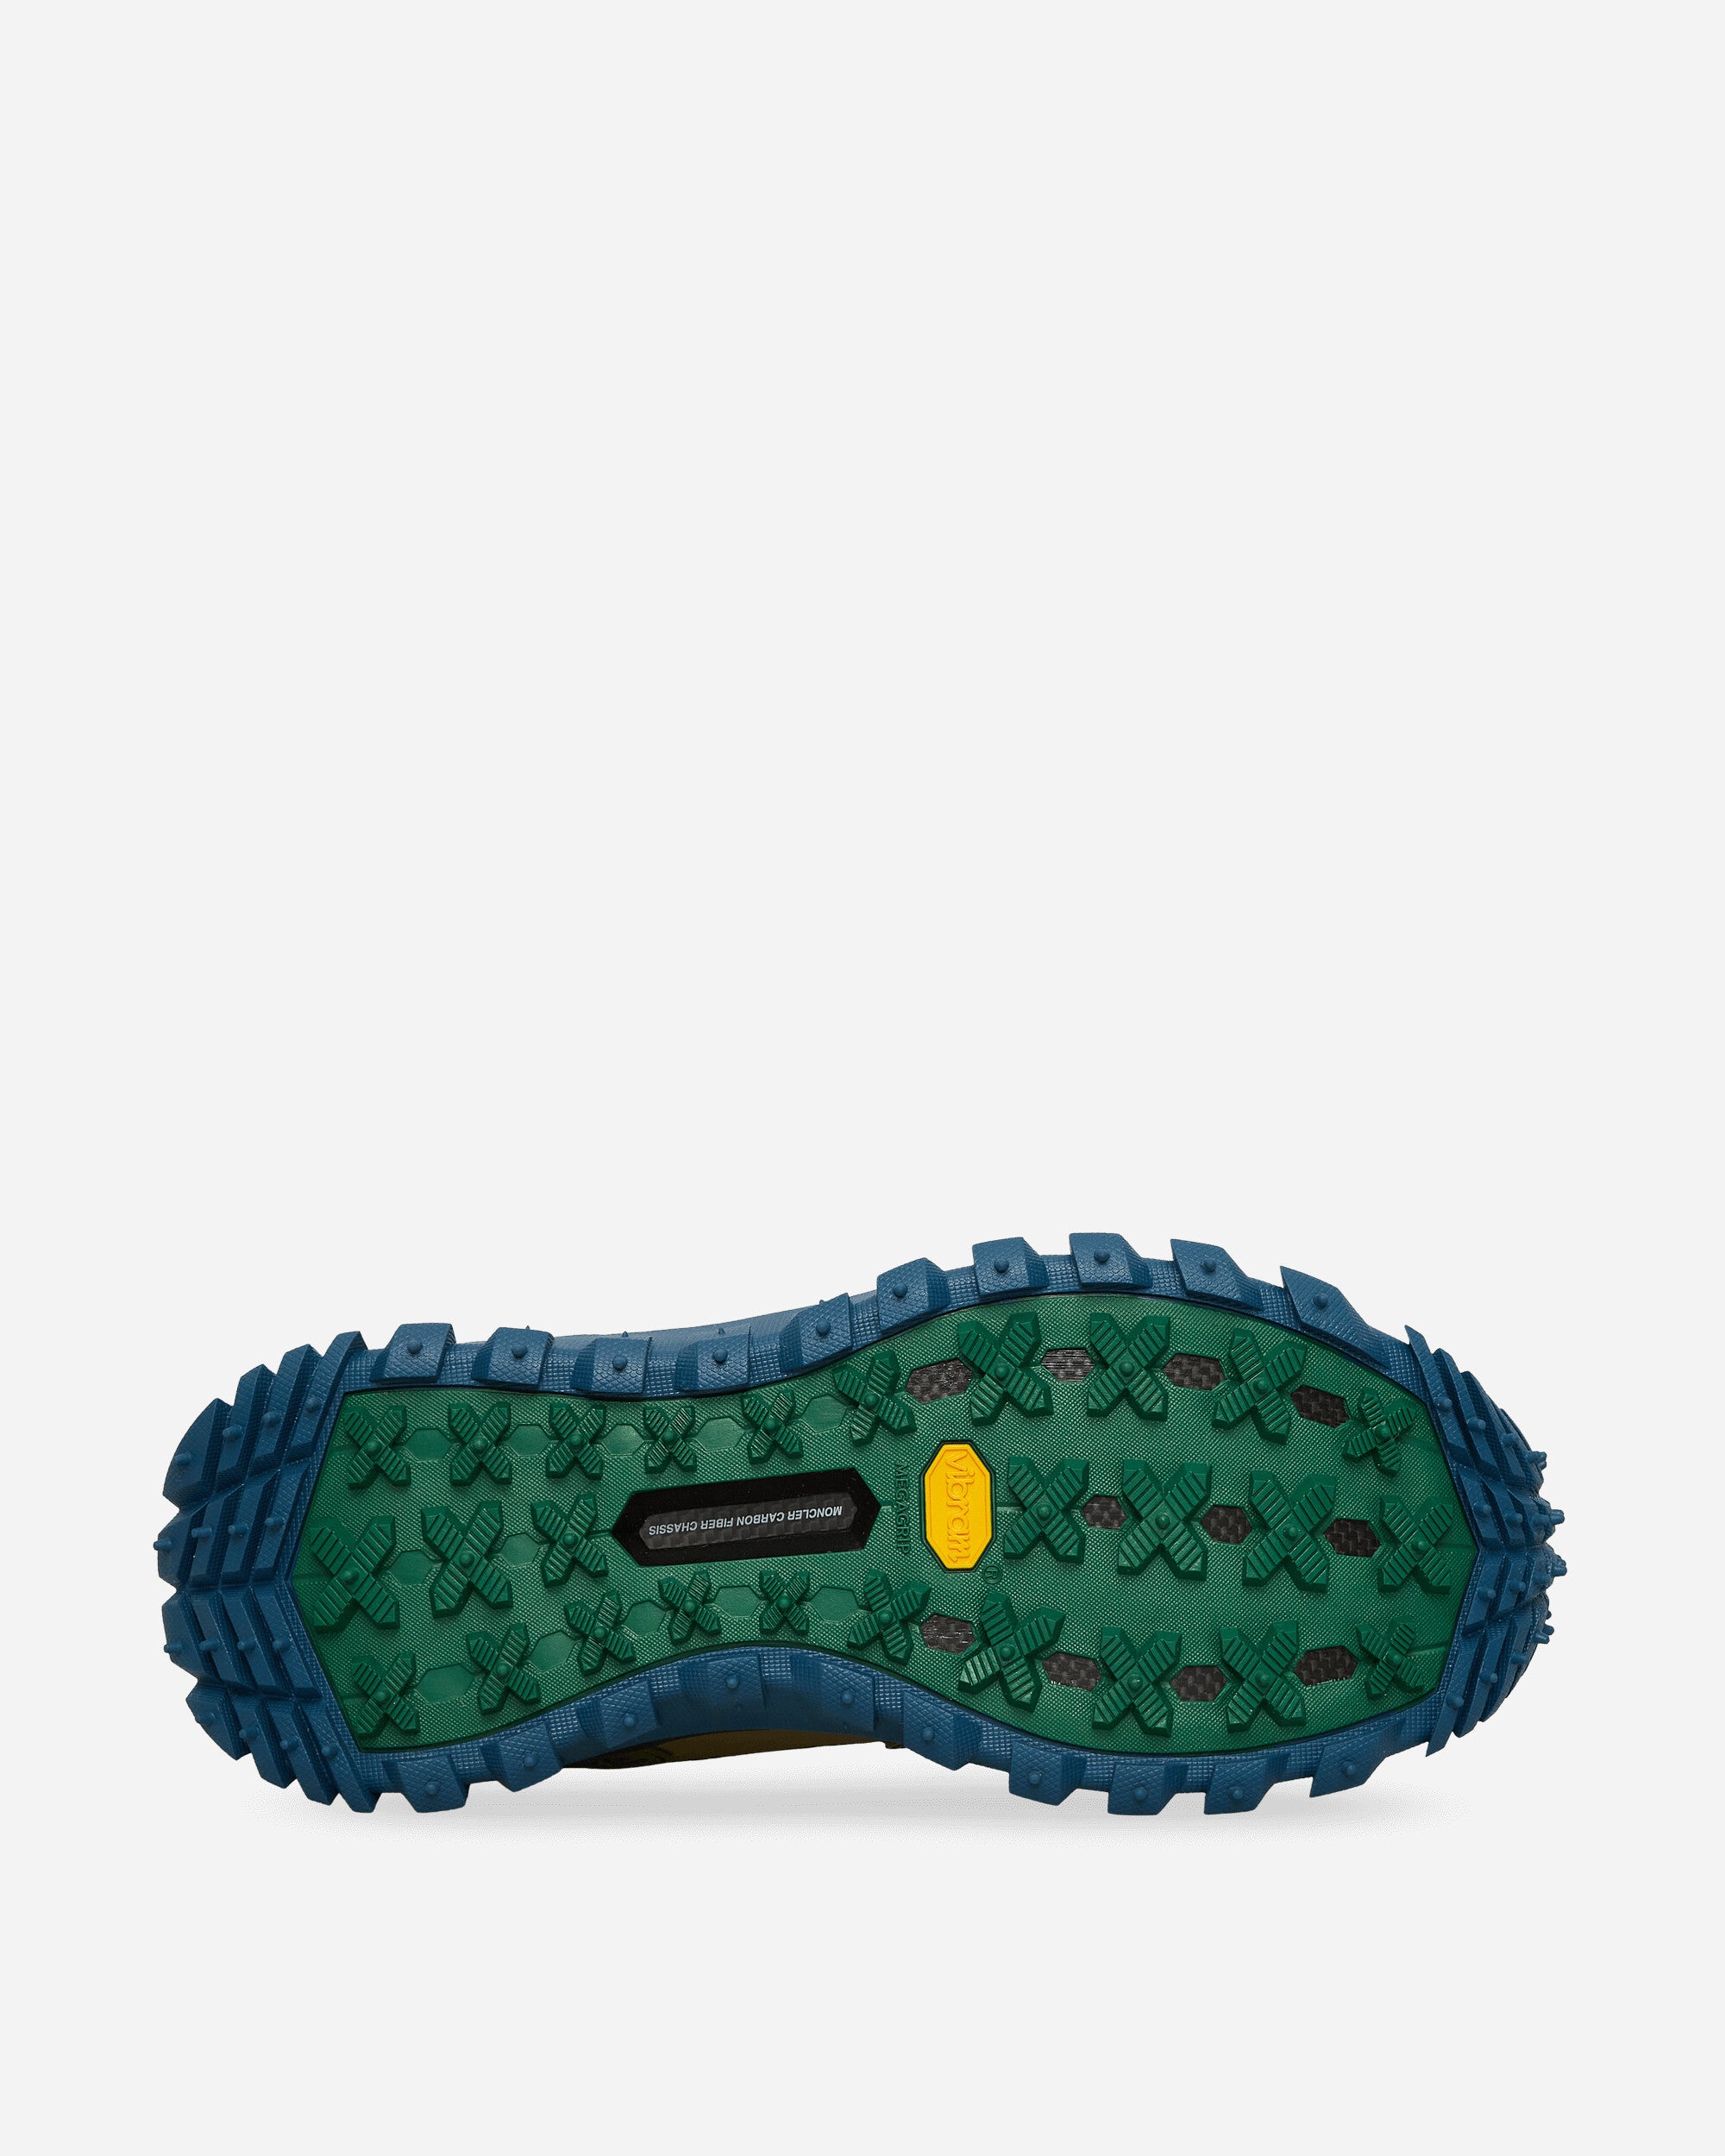 Moncler Genius Trailgrip Grain X Salehe Bembury Green Sneakers Low 4M00010M3275 23E